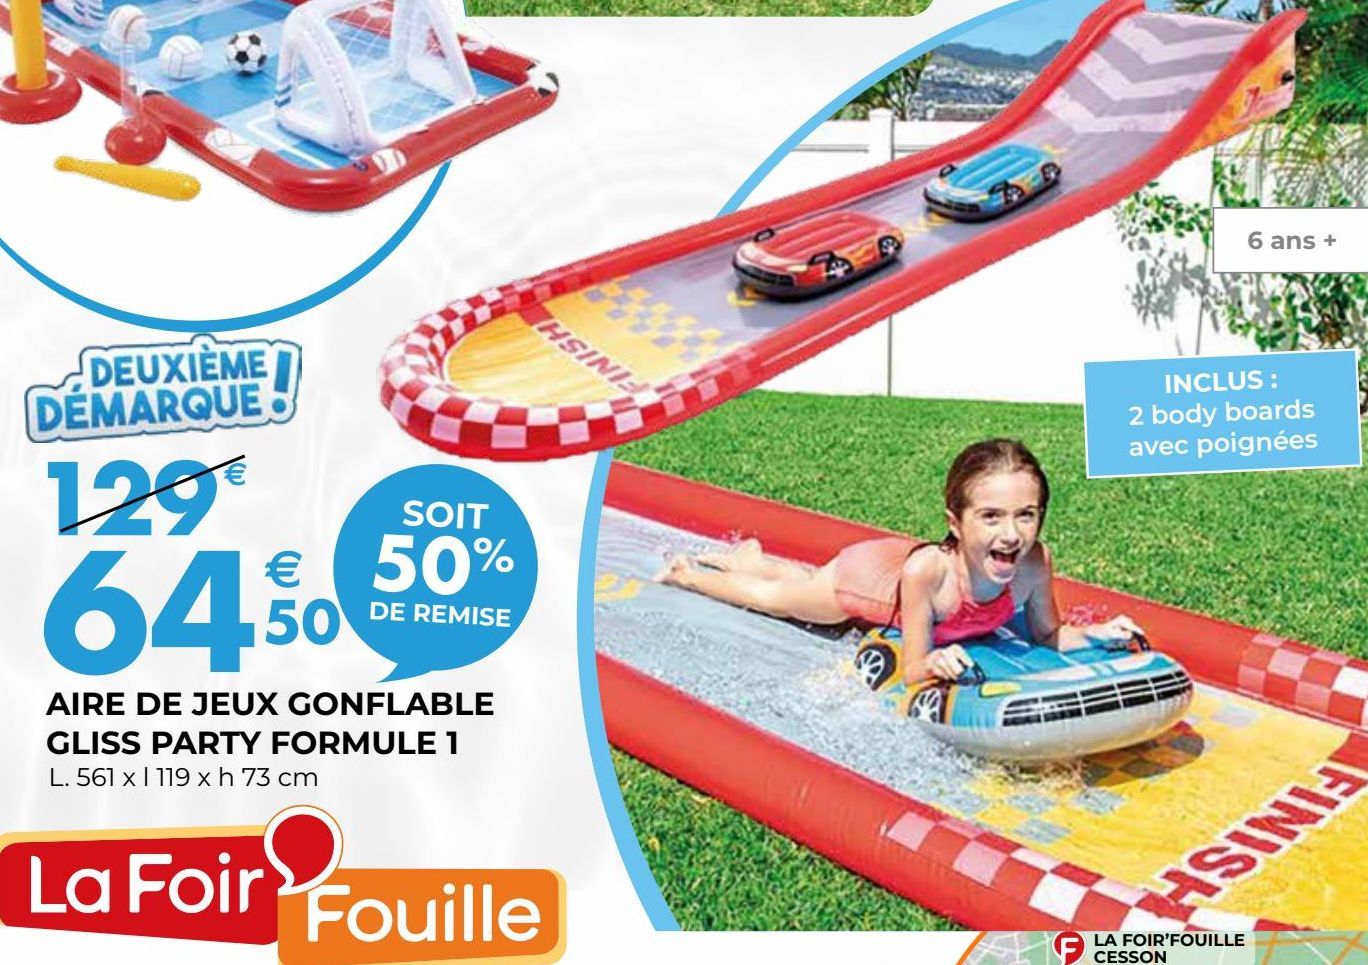 Aire de jeux gonflable gliss party formule 1